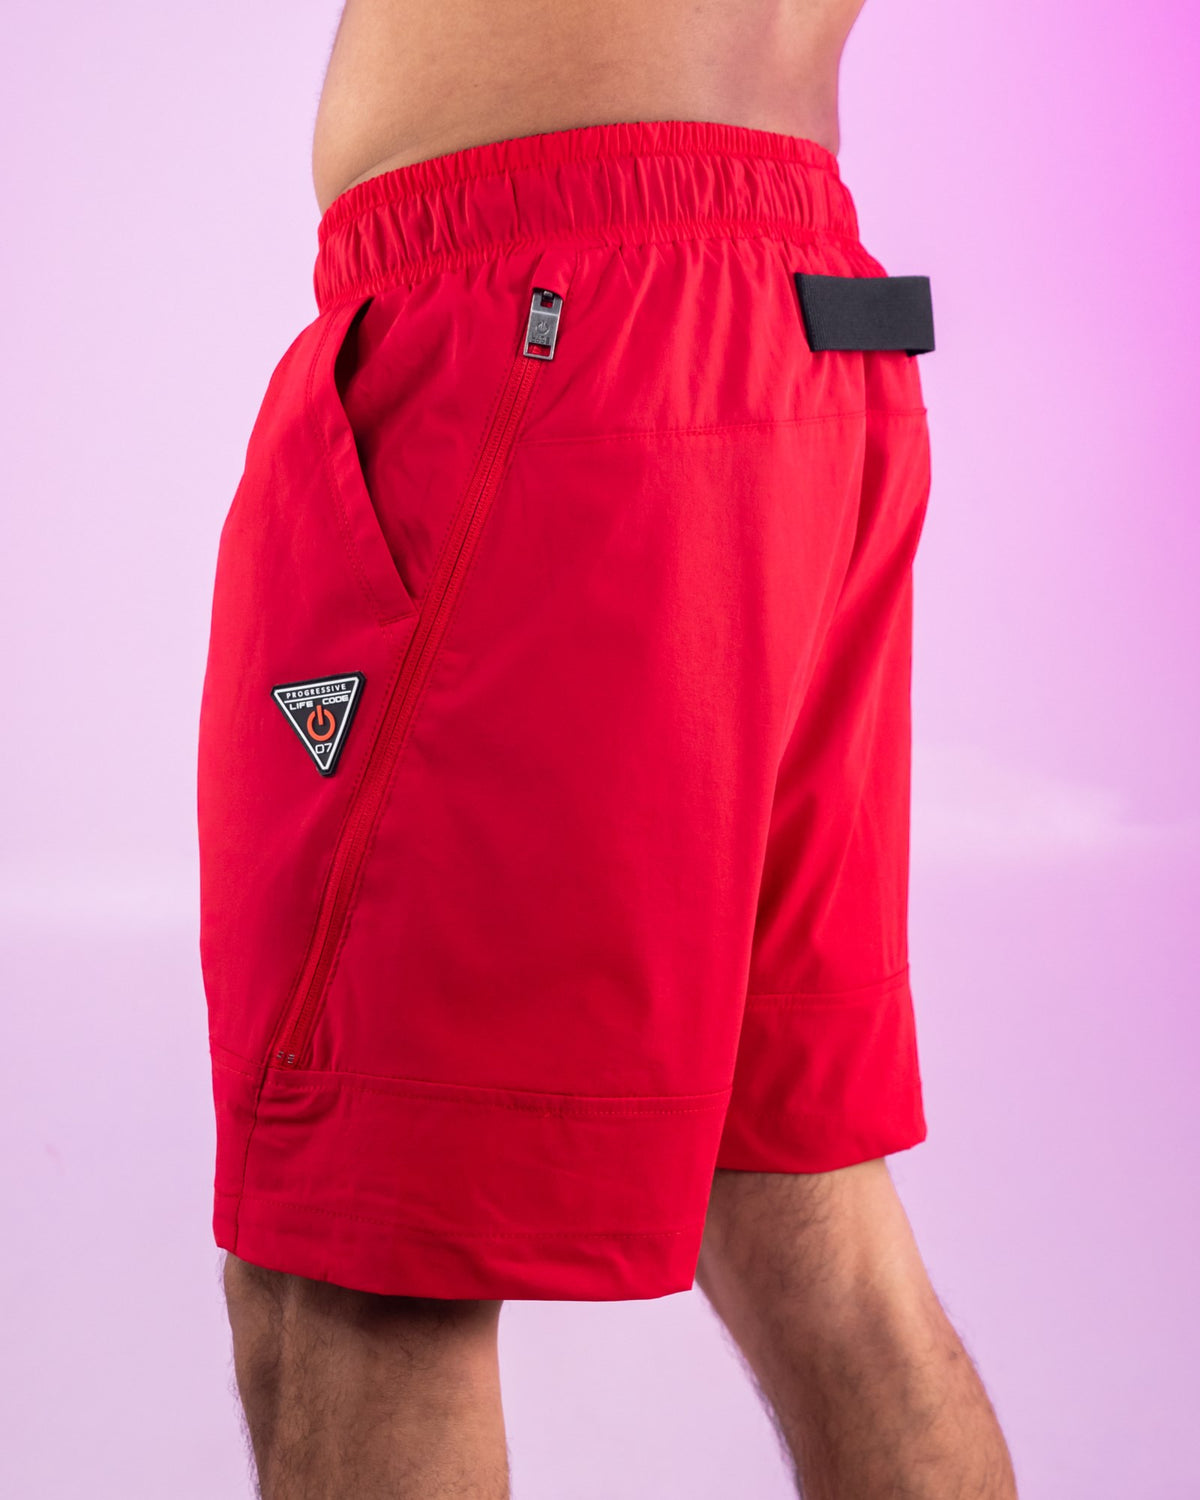 Red Nylon 6 Inch Inseam Shorts